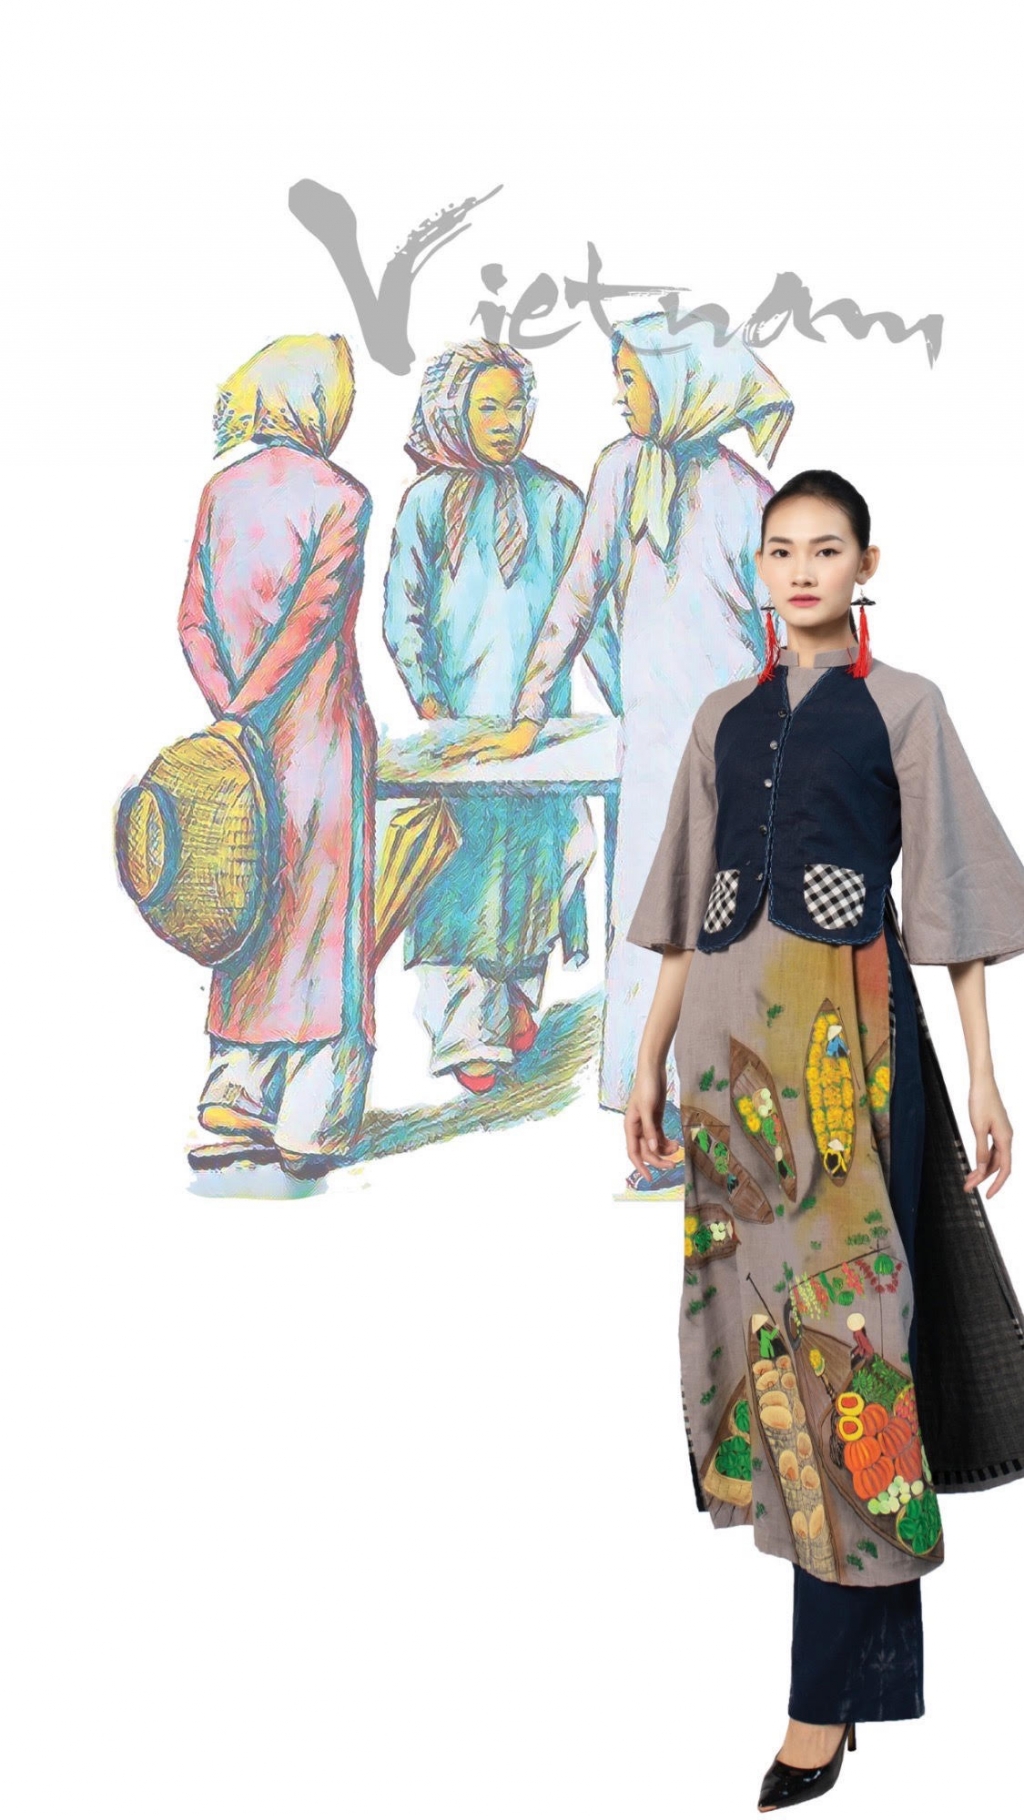 Thế giới trong áo dài Việt